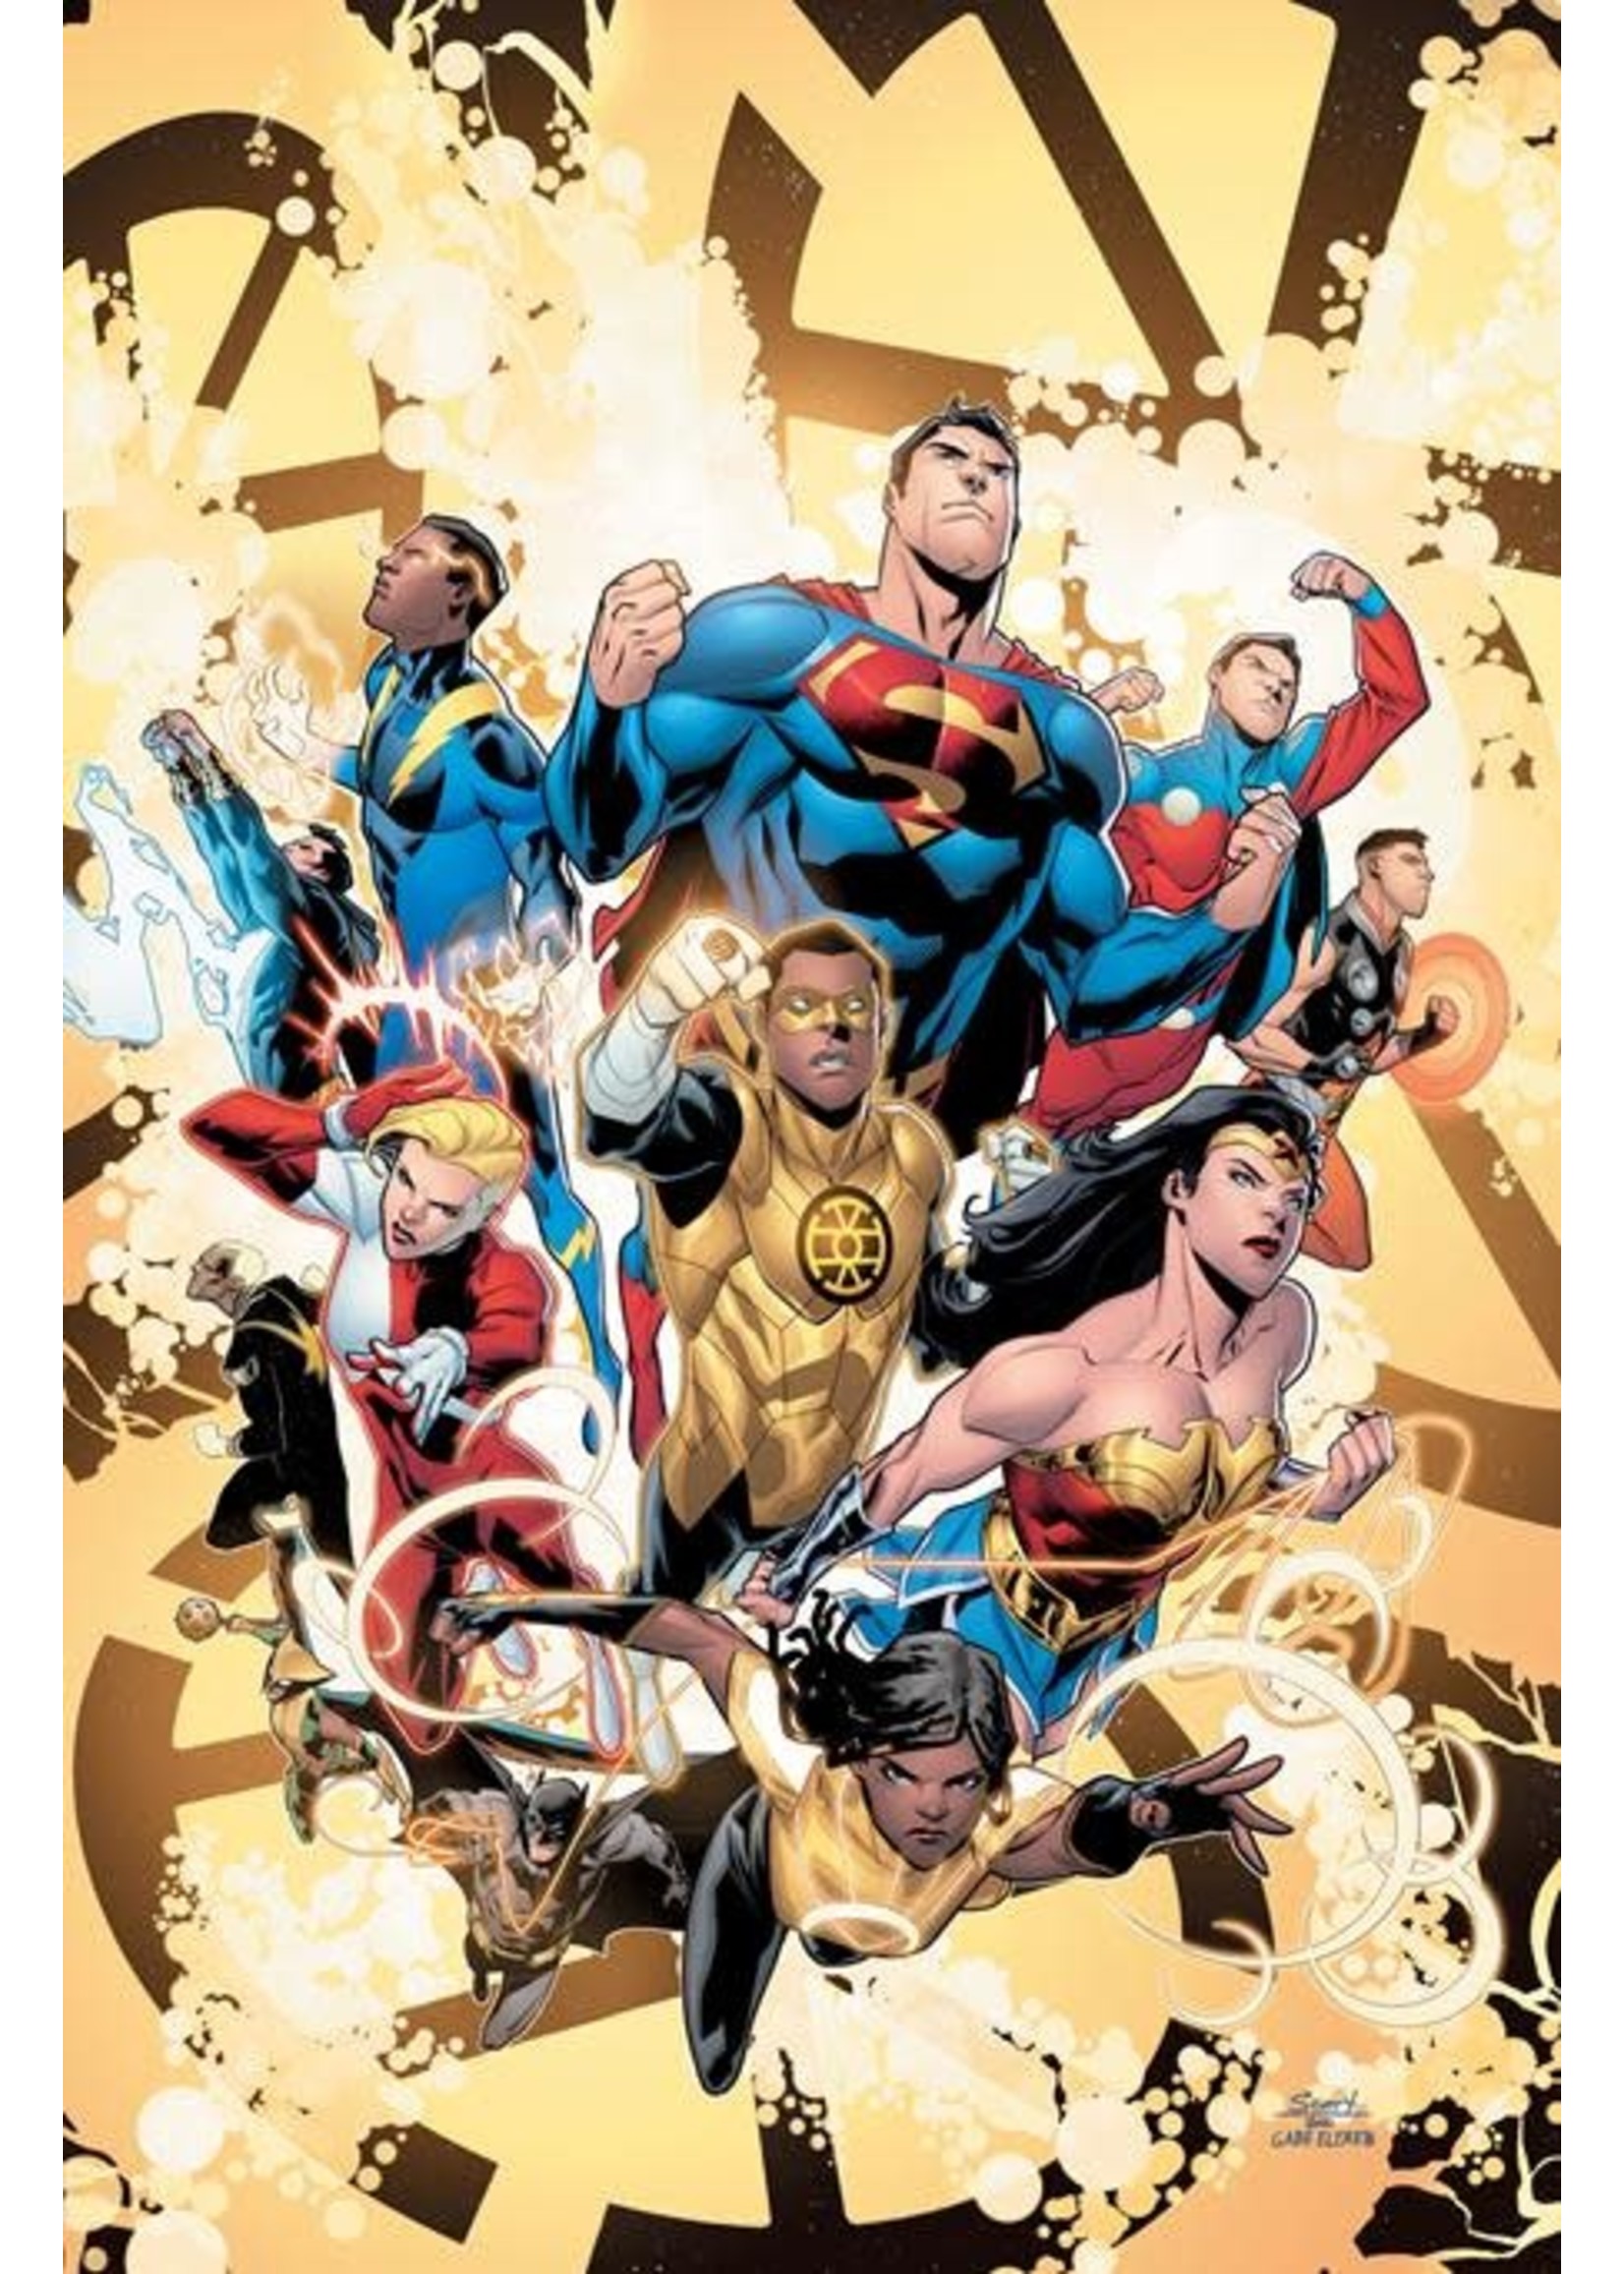 DC COMICS JUSTICE LEAGUE VS LEGION OF SUPER- HEROES #1 CVR A